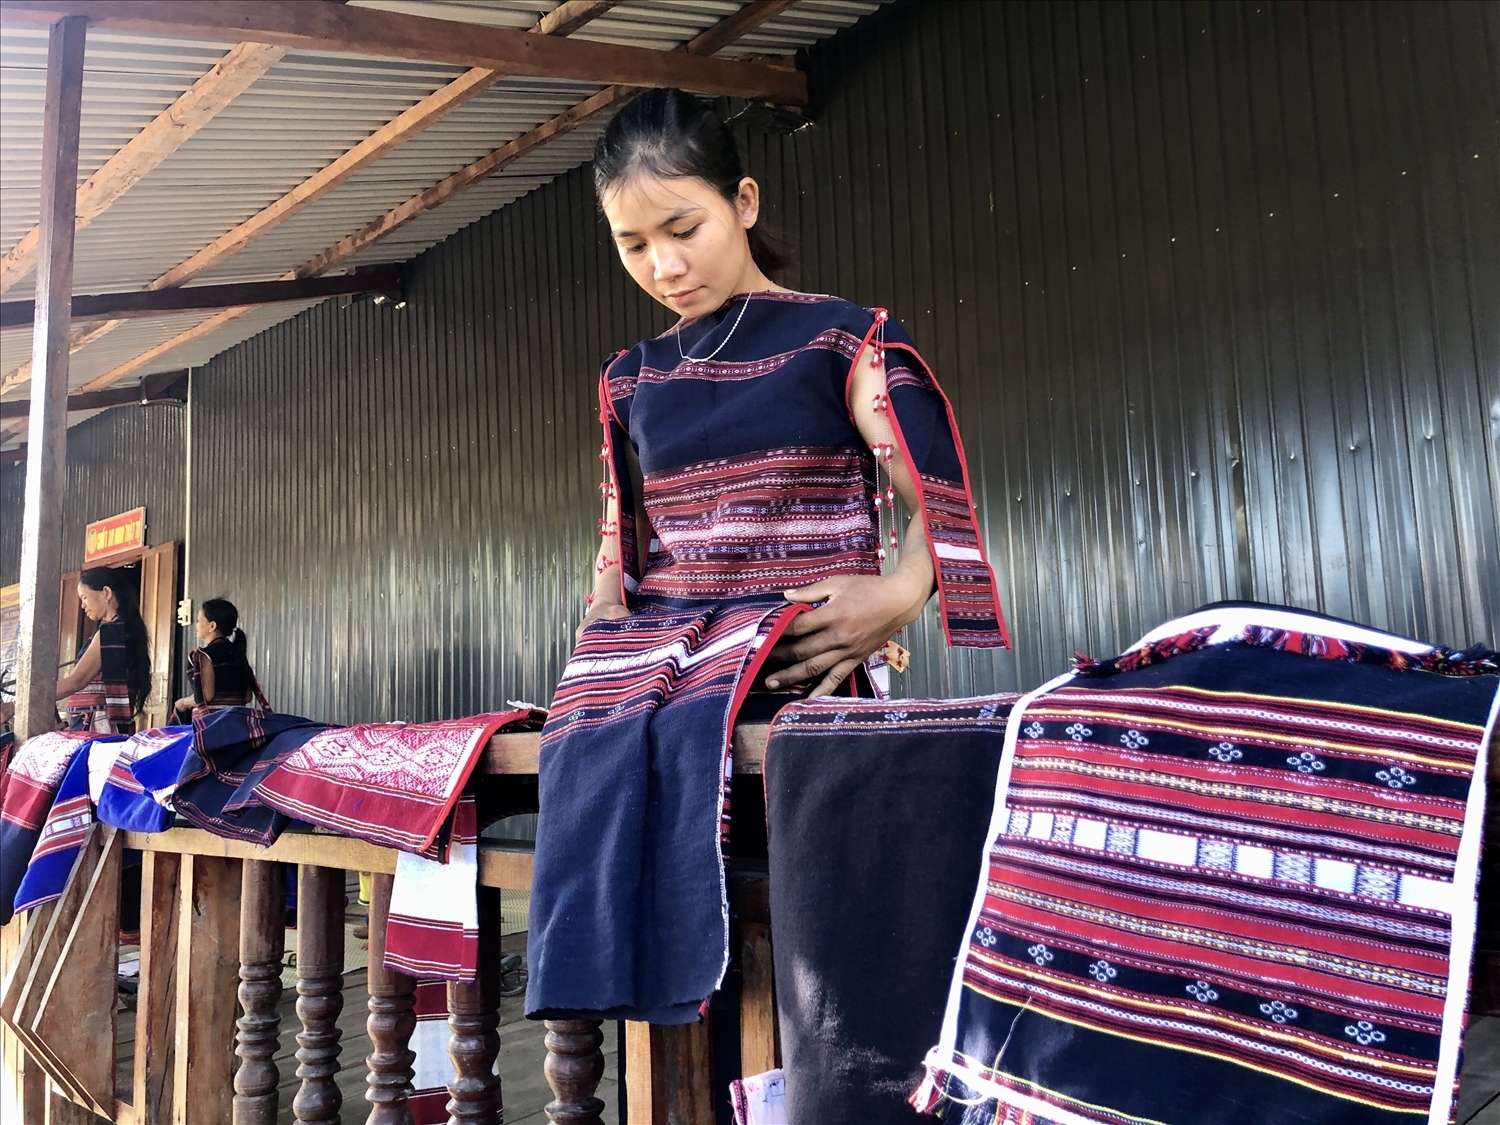 Dệt thổ cẩm đã trở thành biểu tượng tự hào, nét đẹp, bản sắc văn hóa cổ truyền của đồng bào dân tộc Ba Na tại Gia Lai